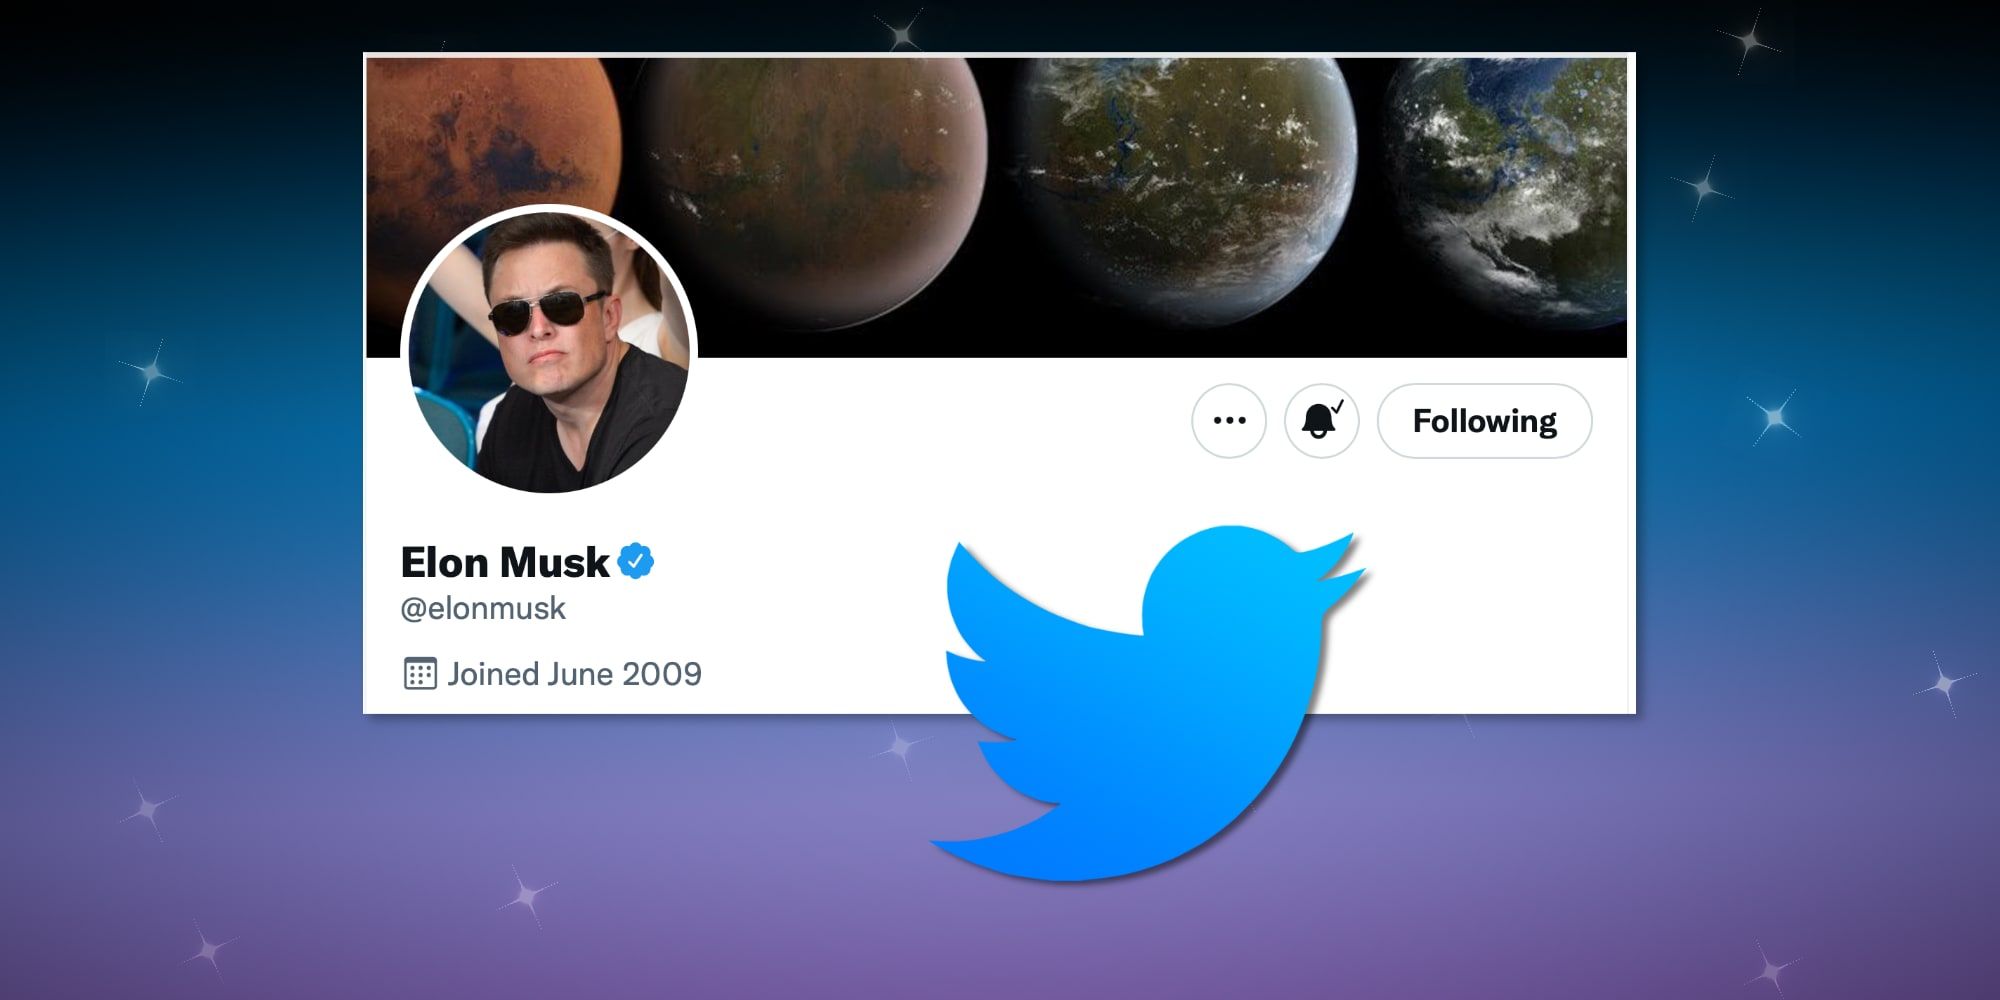 El próximo objetivo de Elon Musk es el cheque verificado de Twitter